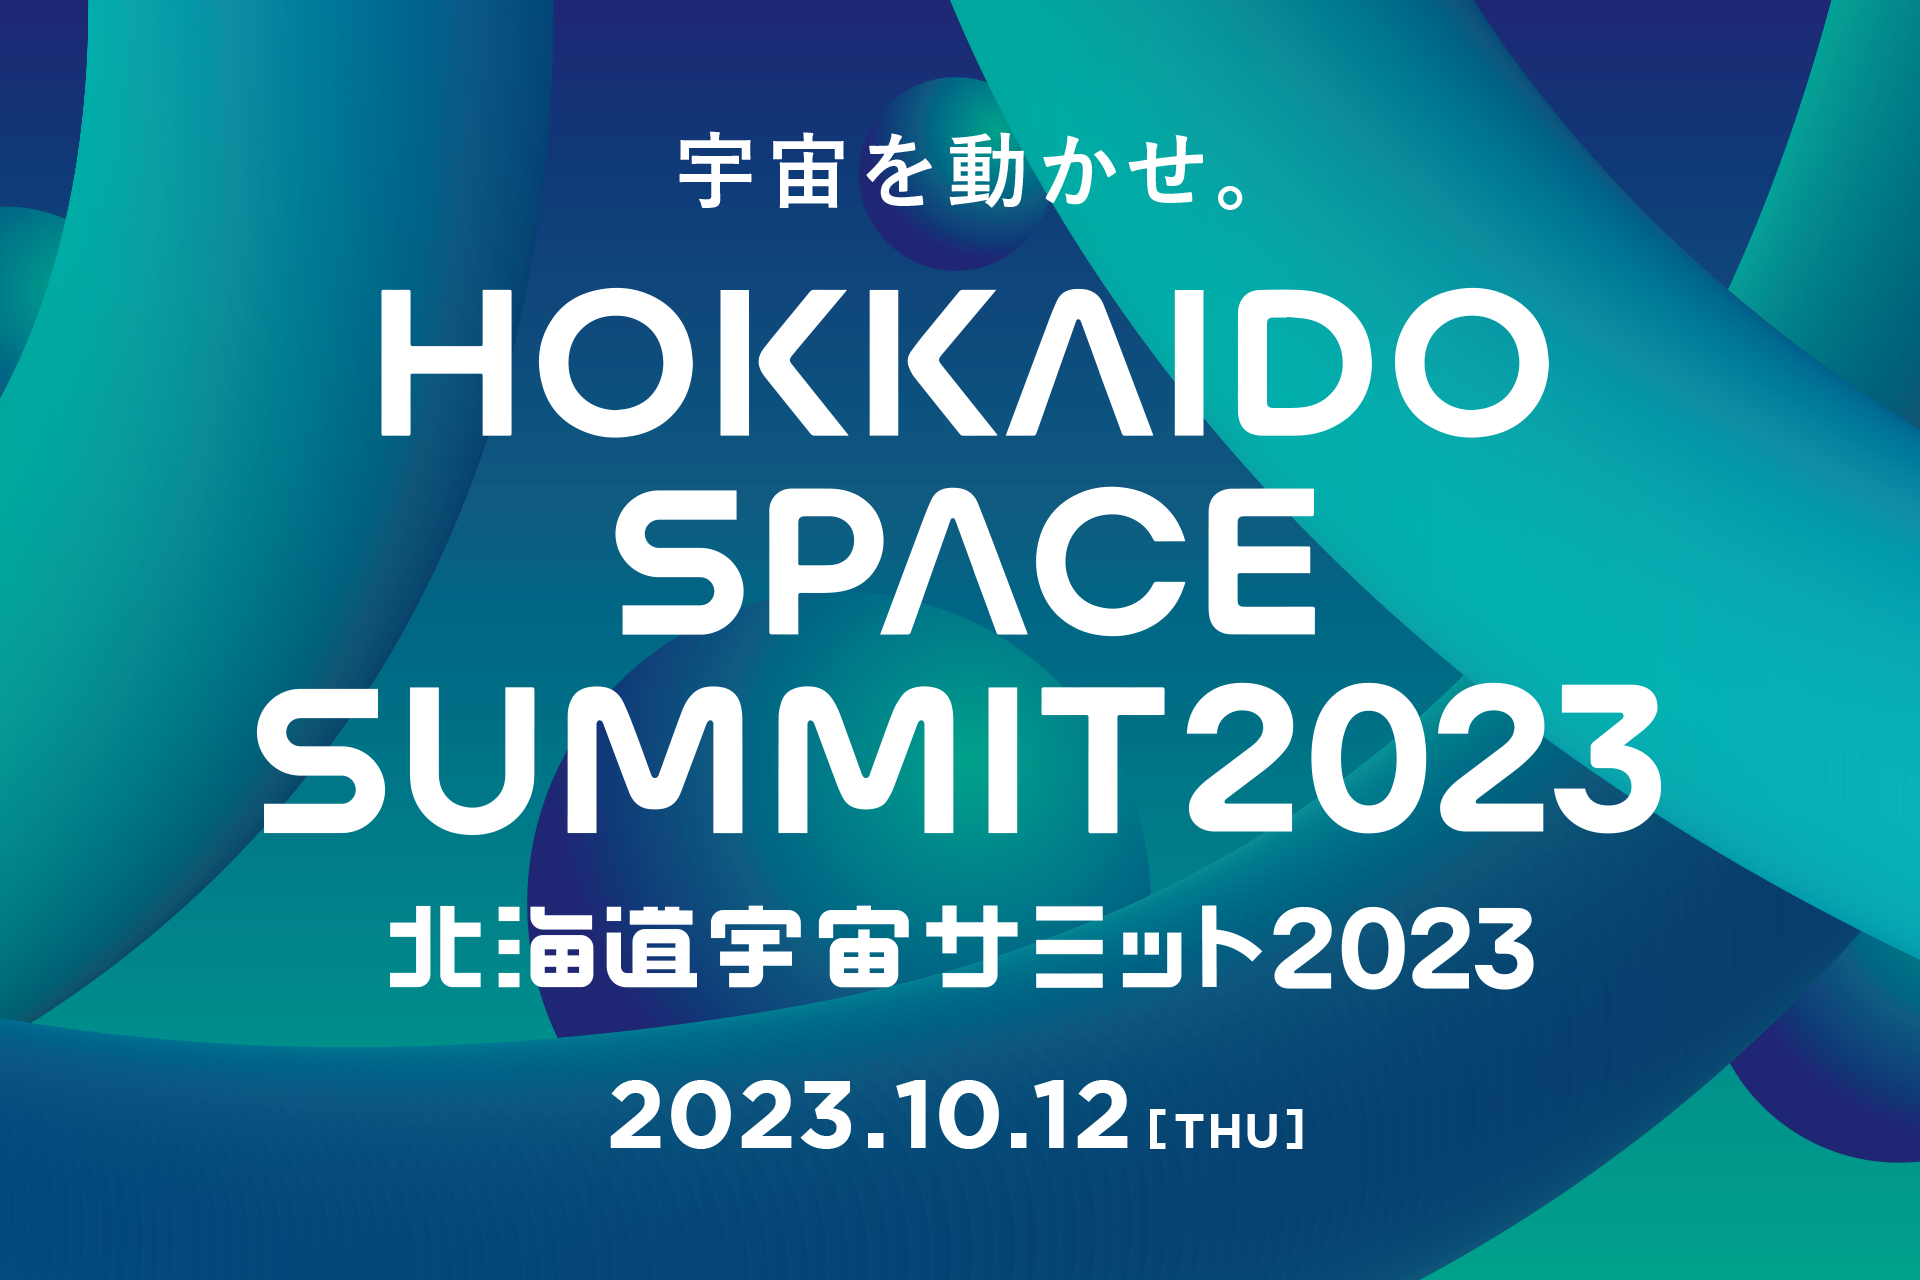 宇宙ビジネスカンファレンス「北海道宇宙サミット2023」への出展のお知らせ